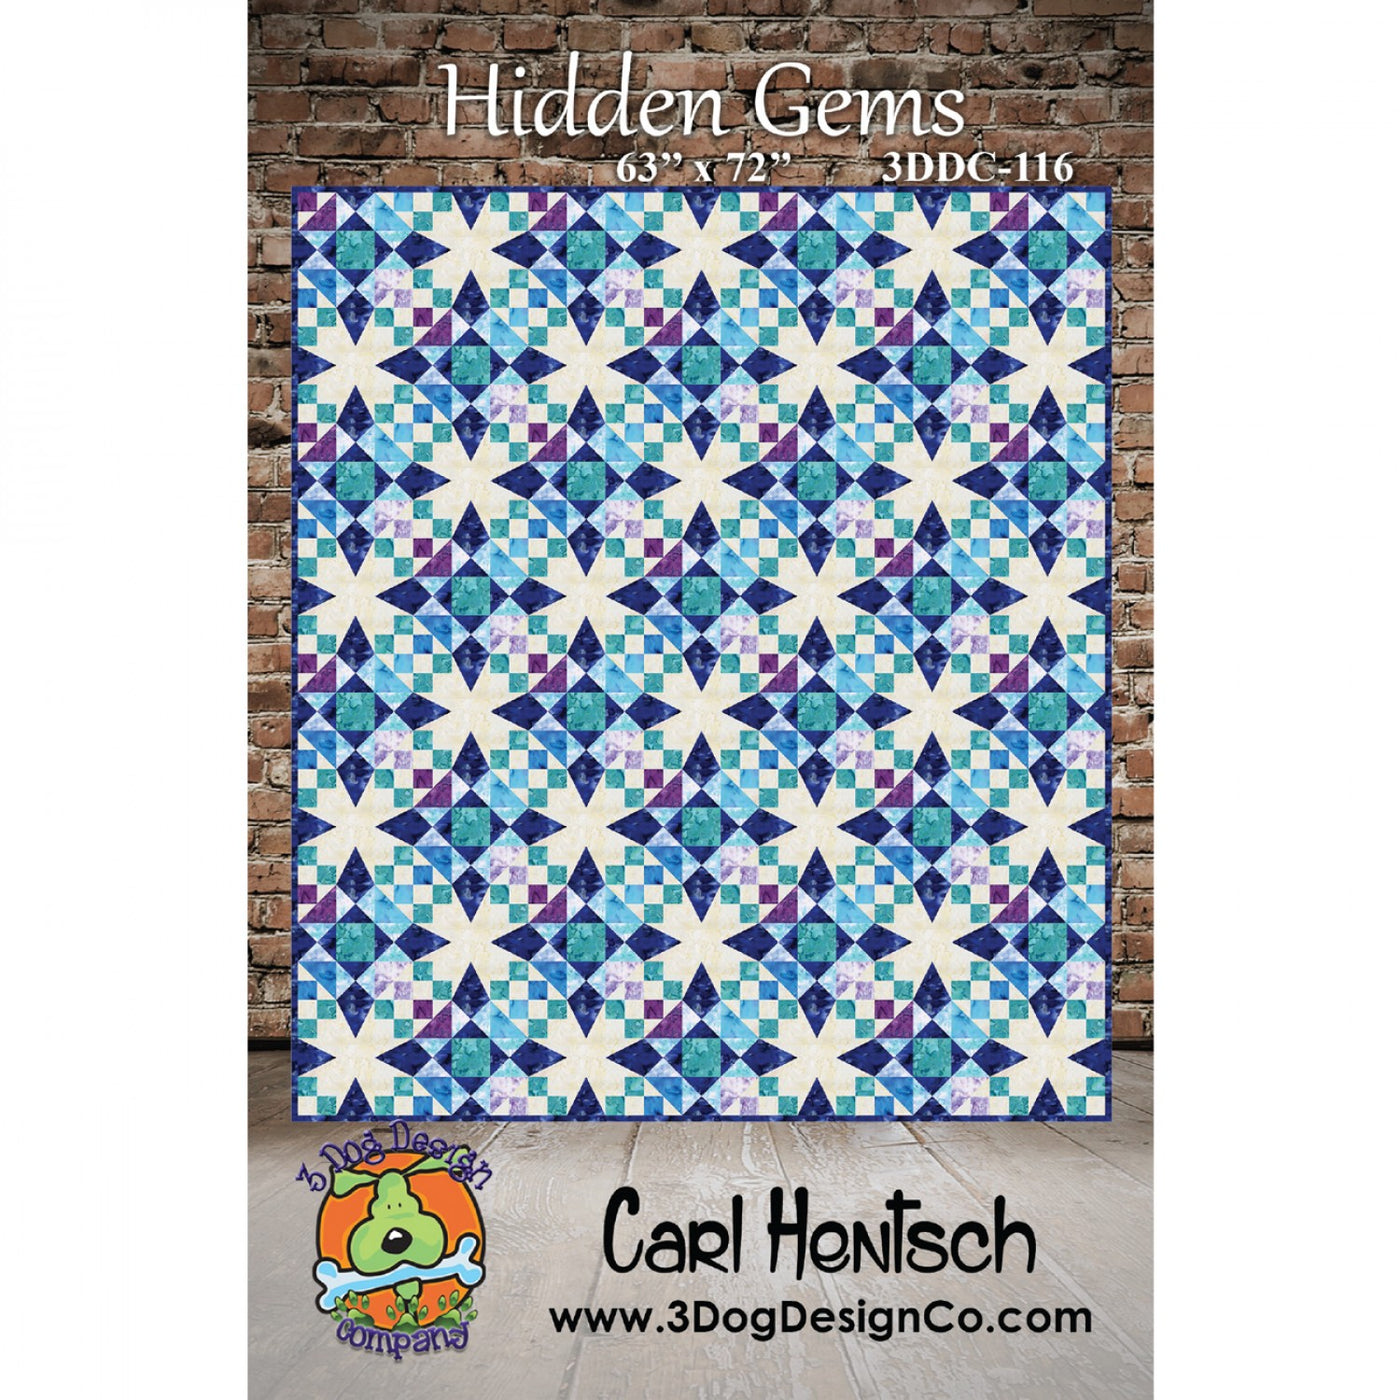 Hidden Gems mönster - Carl Hentsch - 3 Dog Design Company